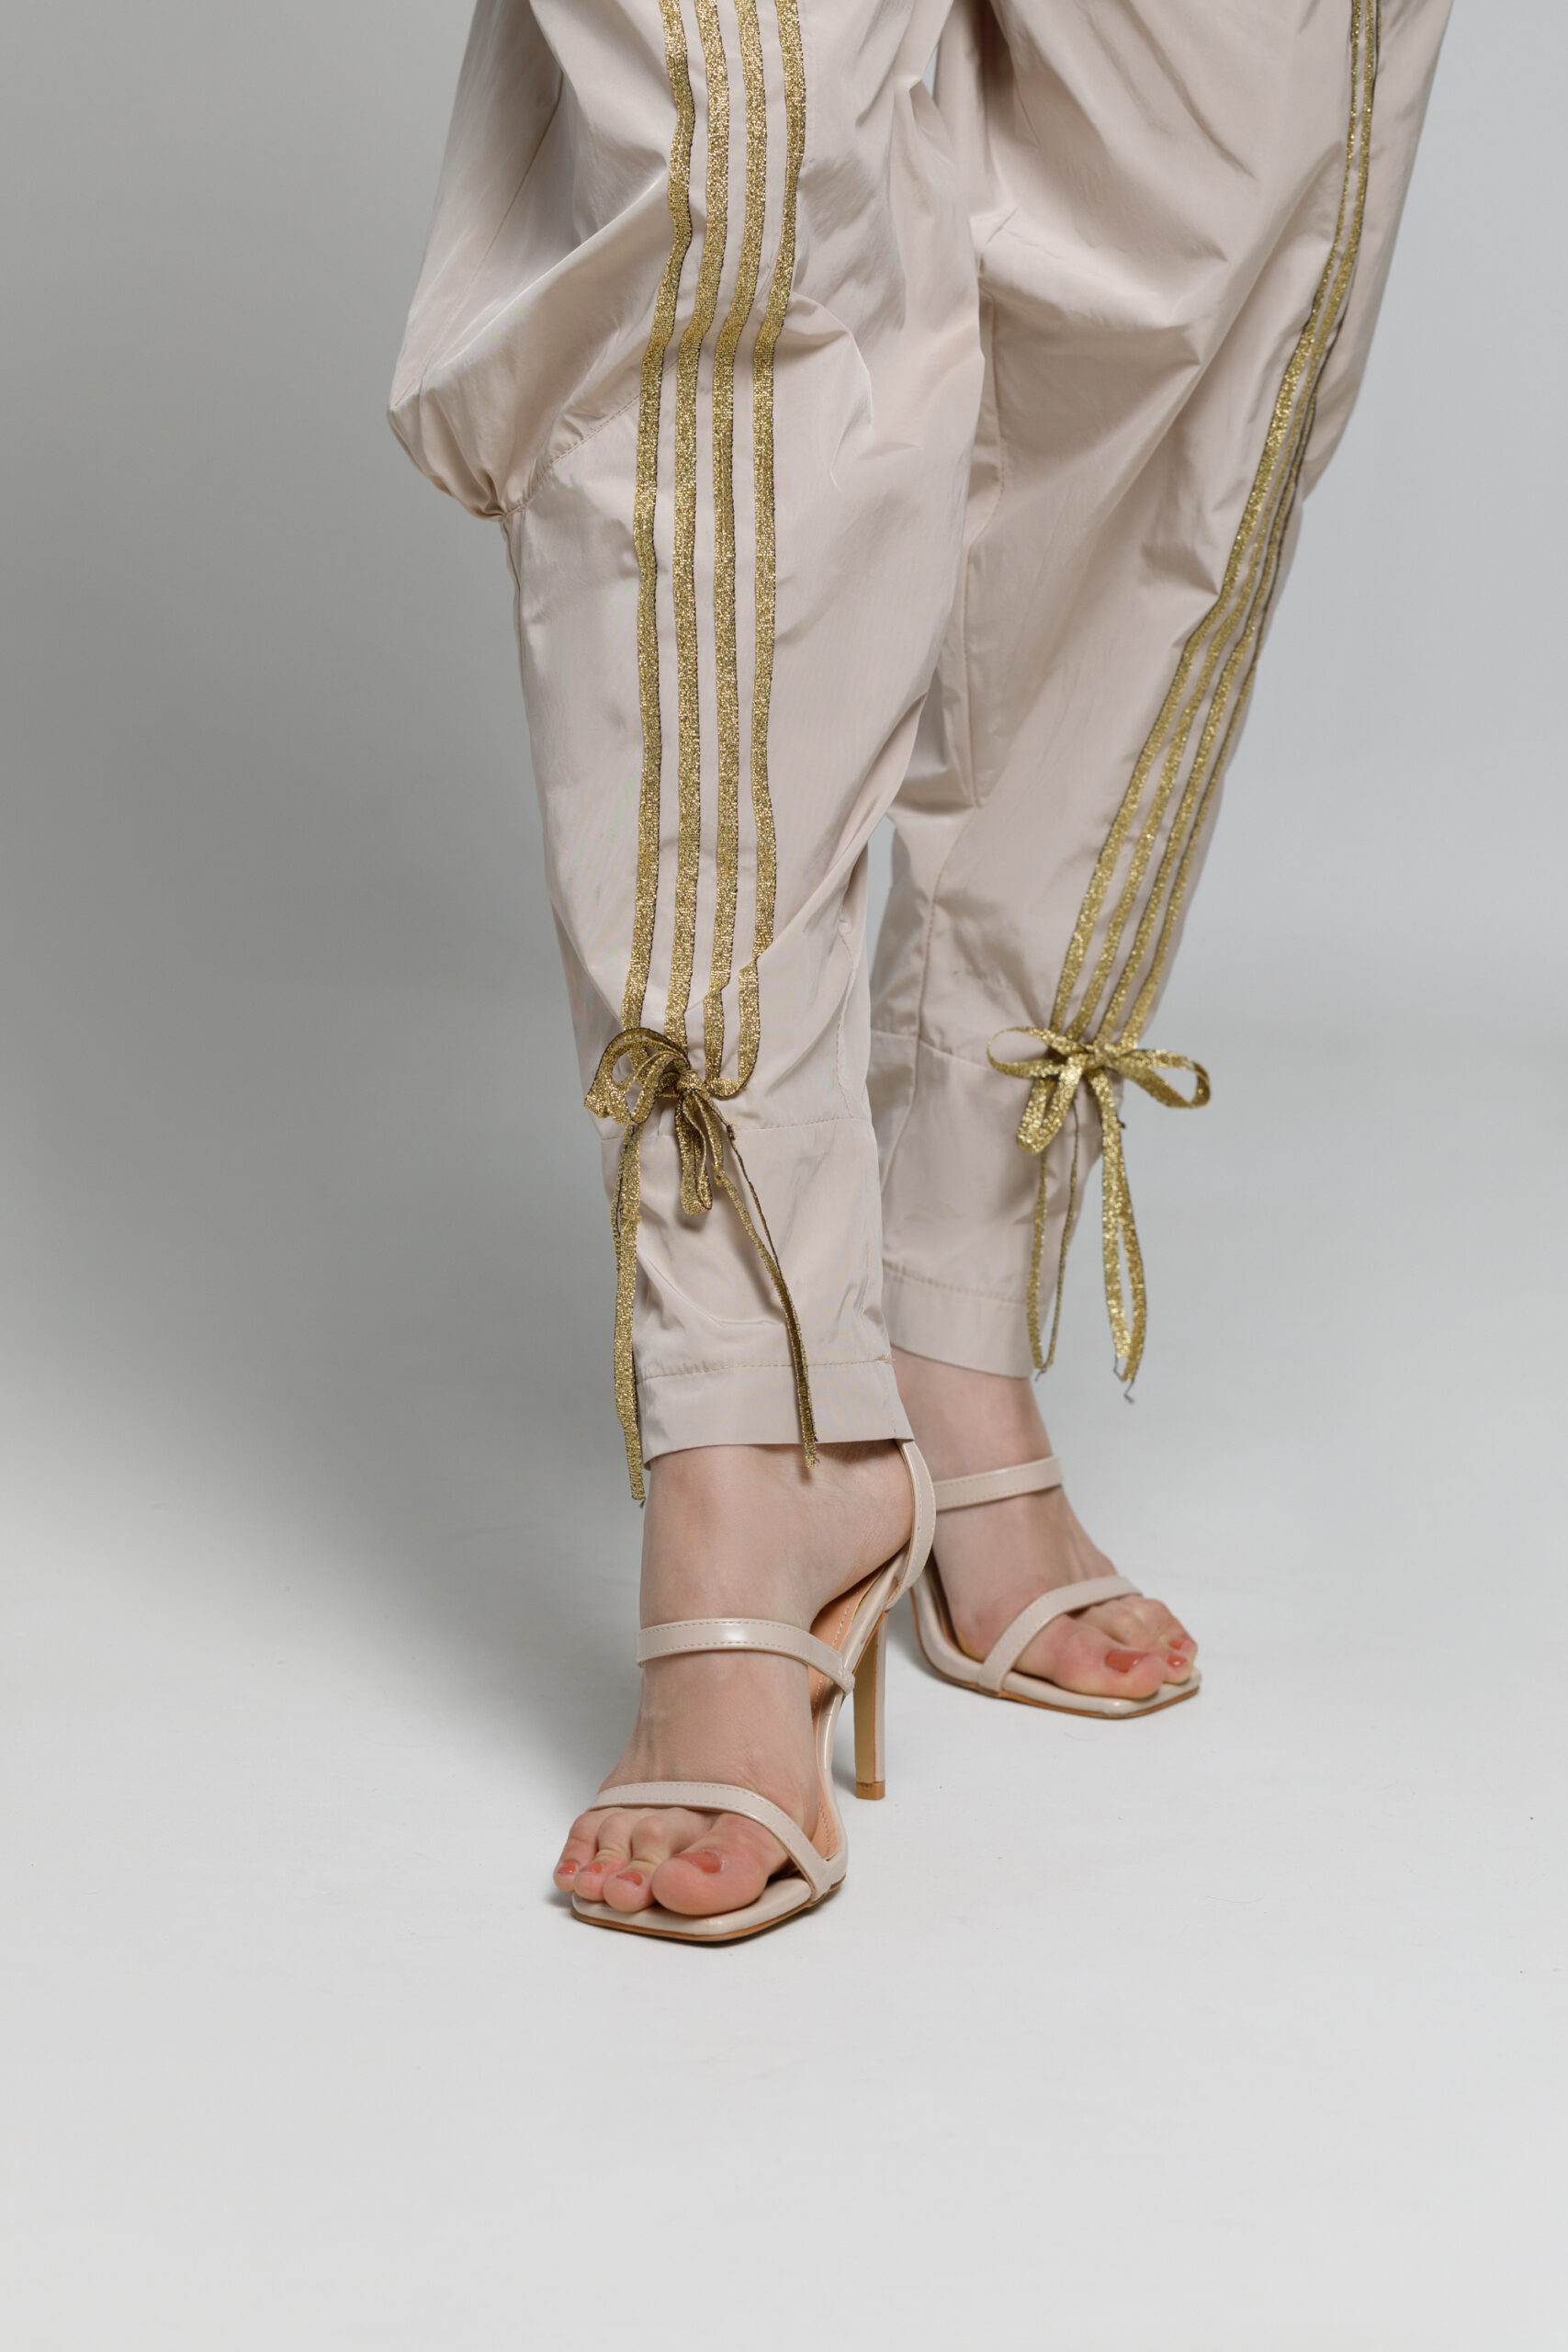 Pantalon LINDA24 crem cu aplicatii aurii. Materiale naturale, design unicat, cu broderie si aplicatii handmade